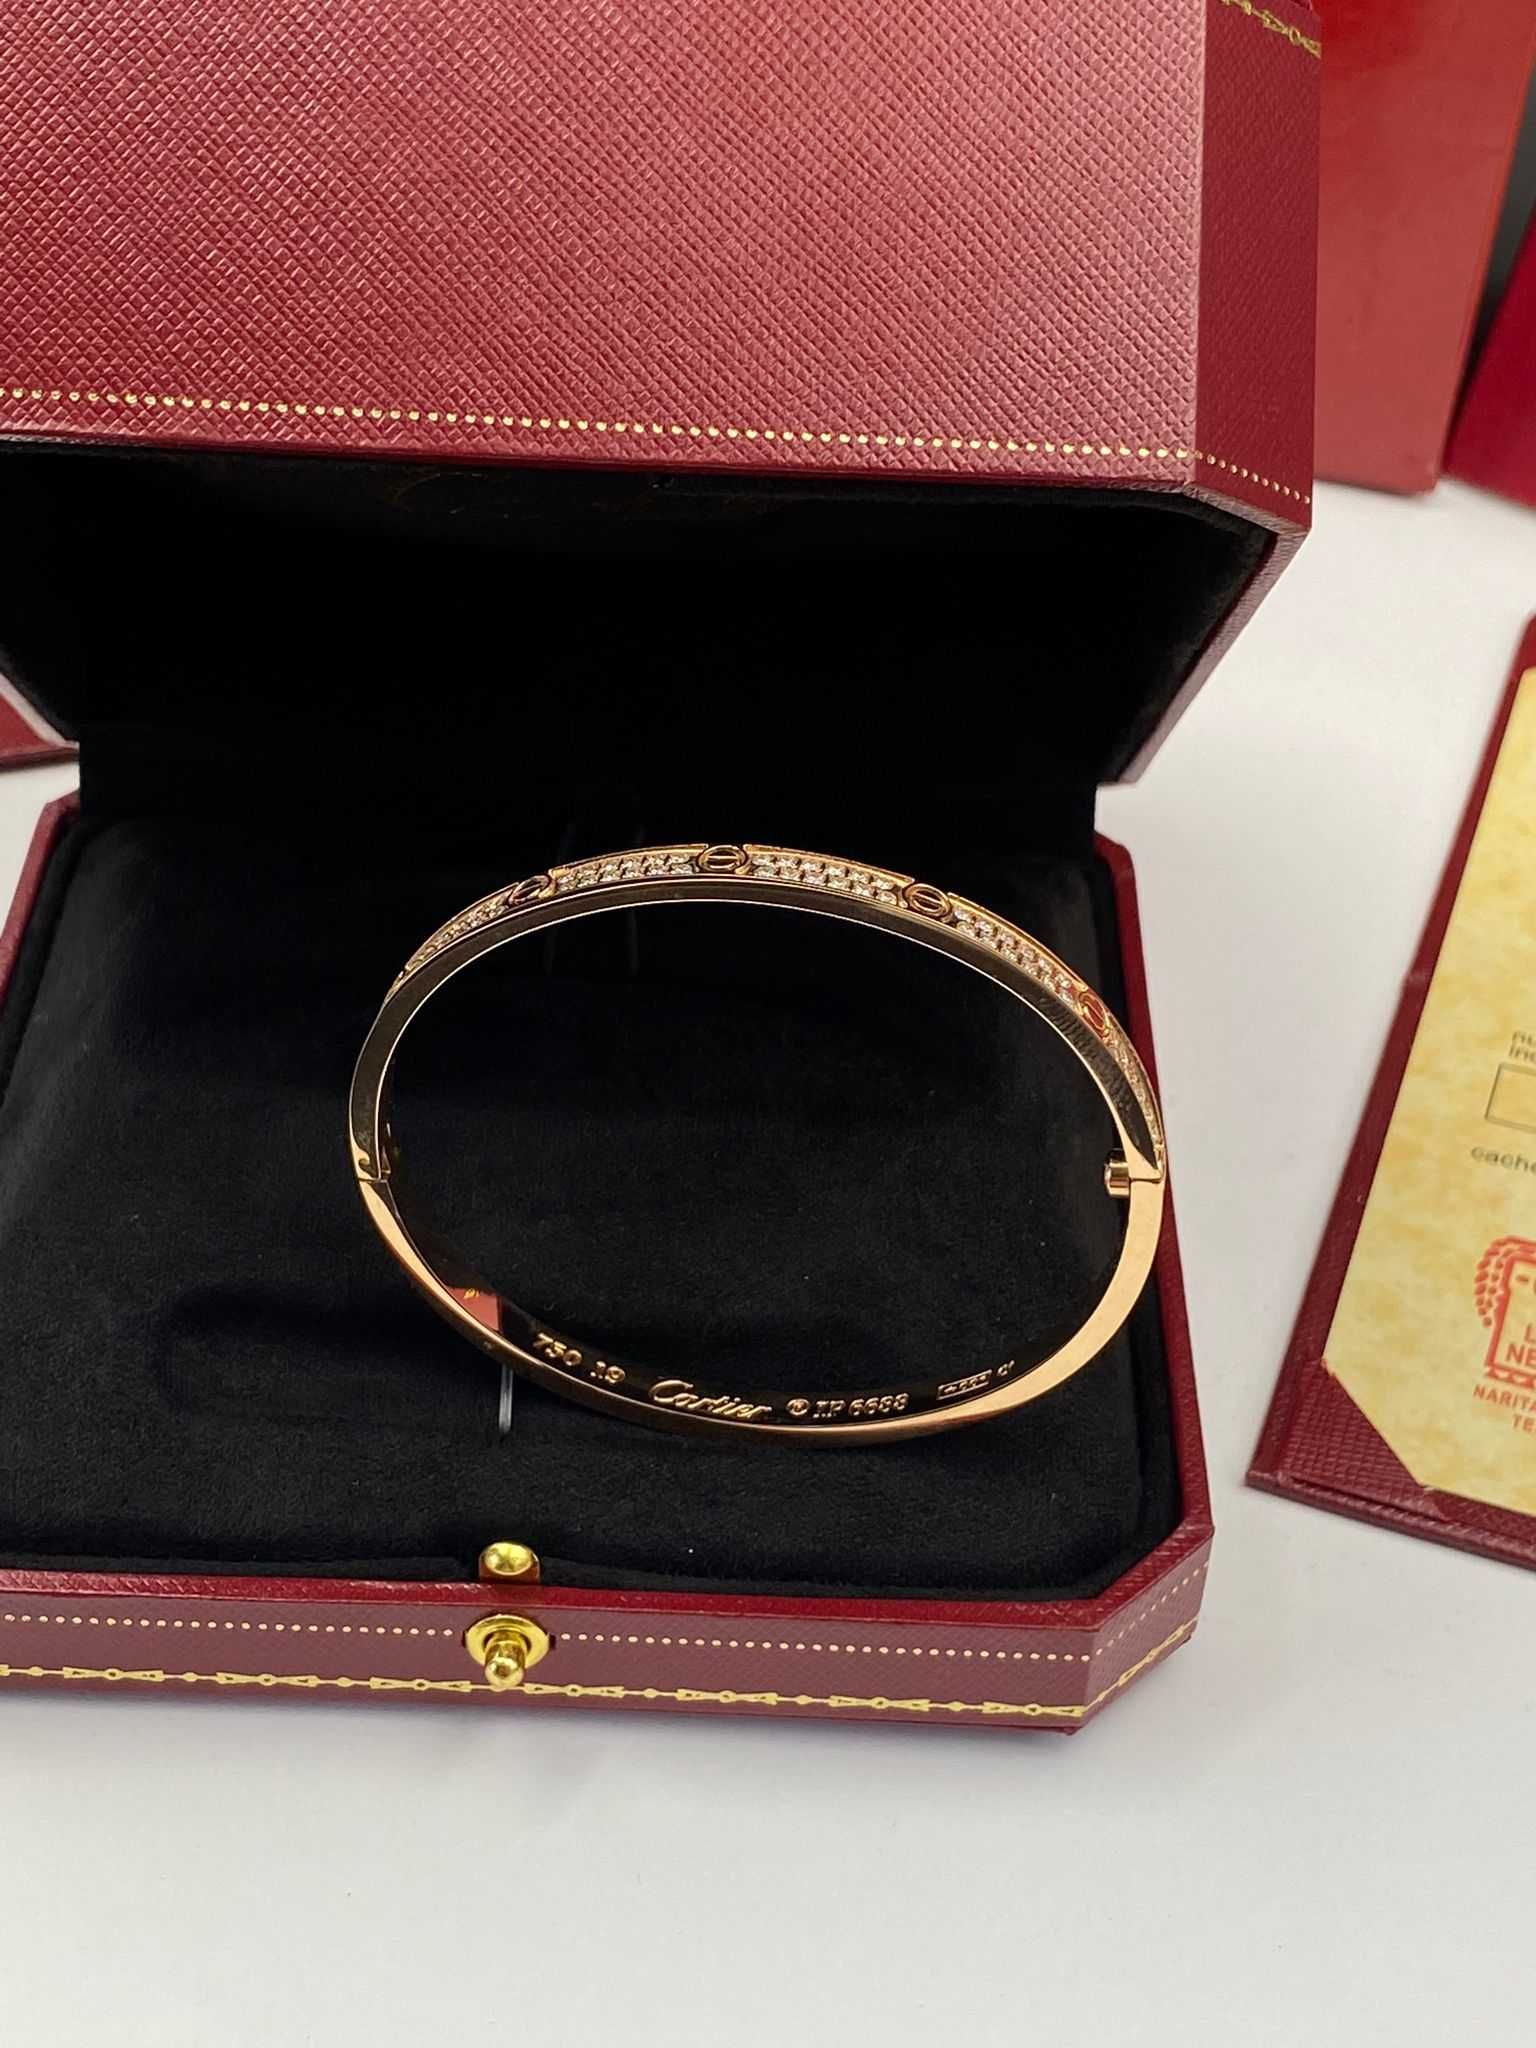 Brățară Cartier LOVE 19 din aur rose 750 Slim cu Diamante